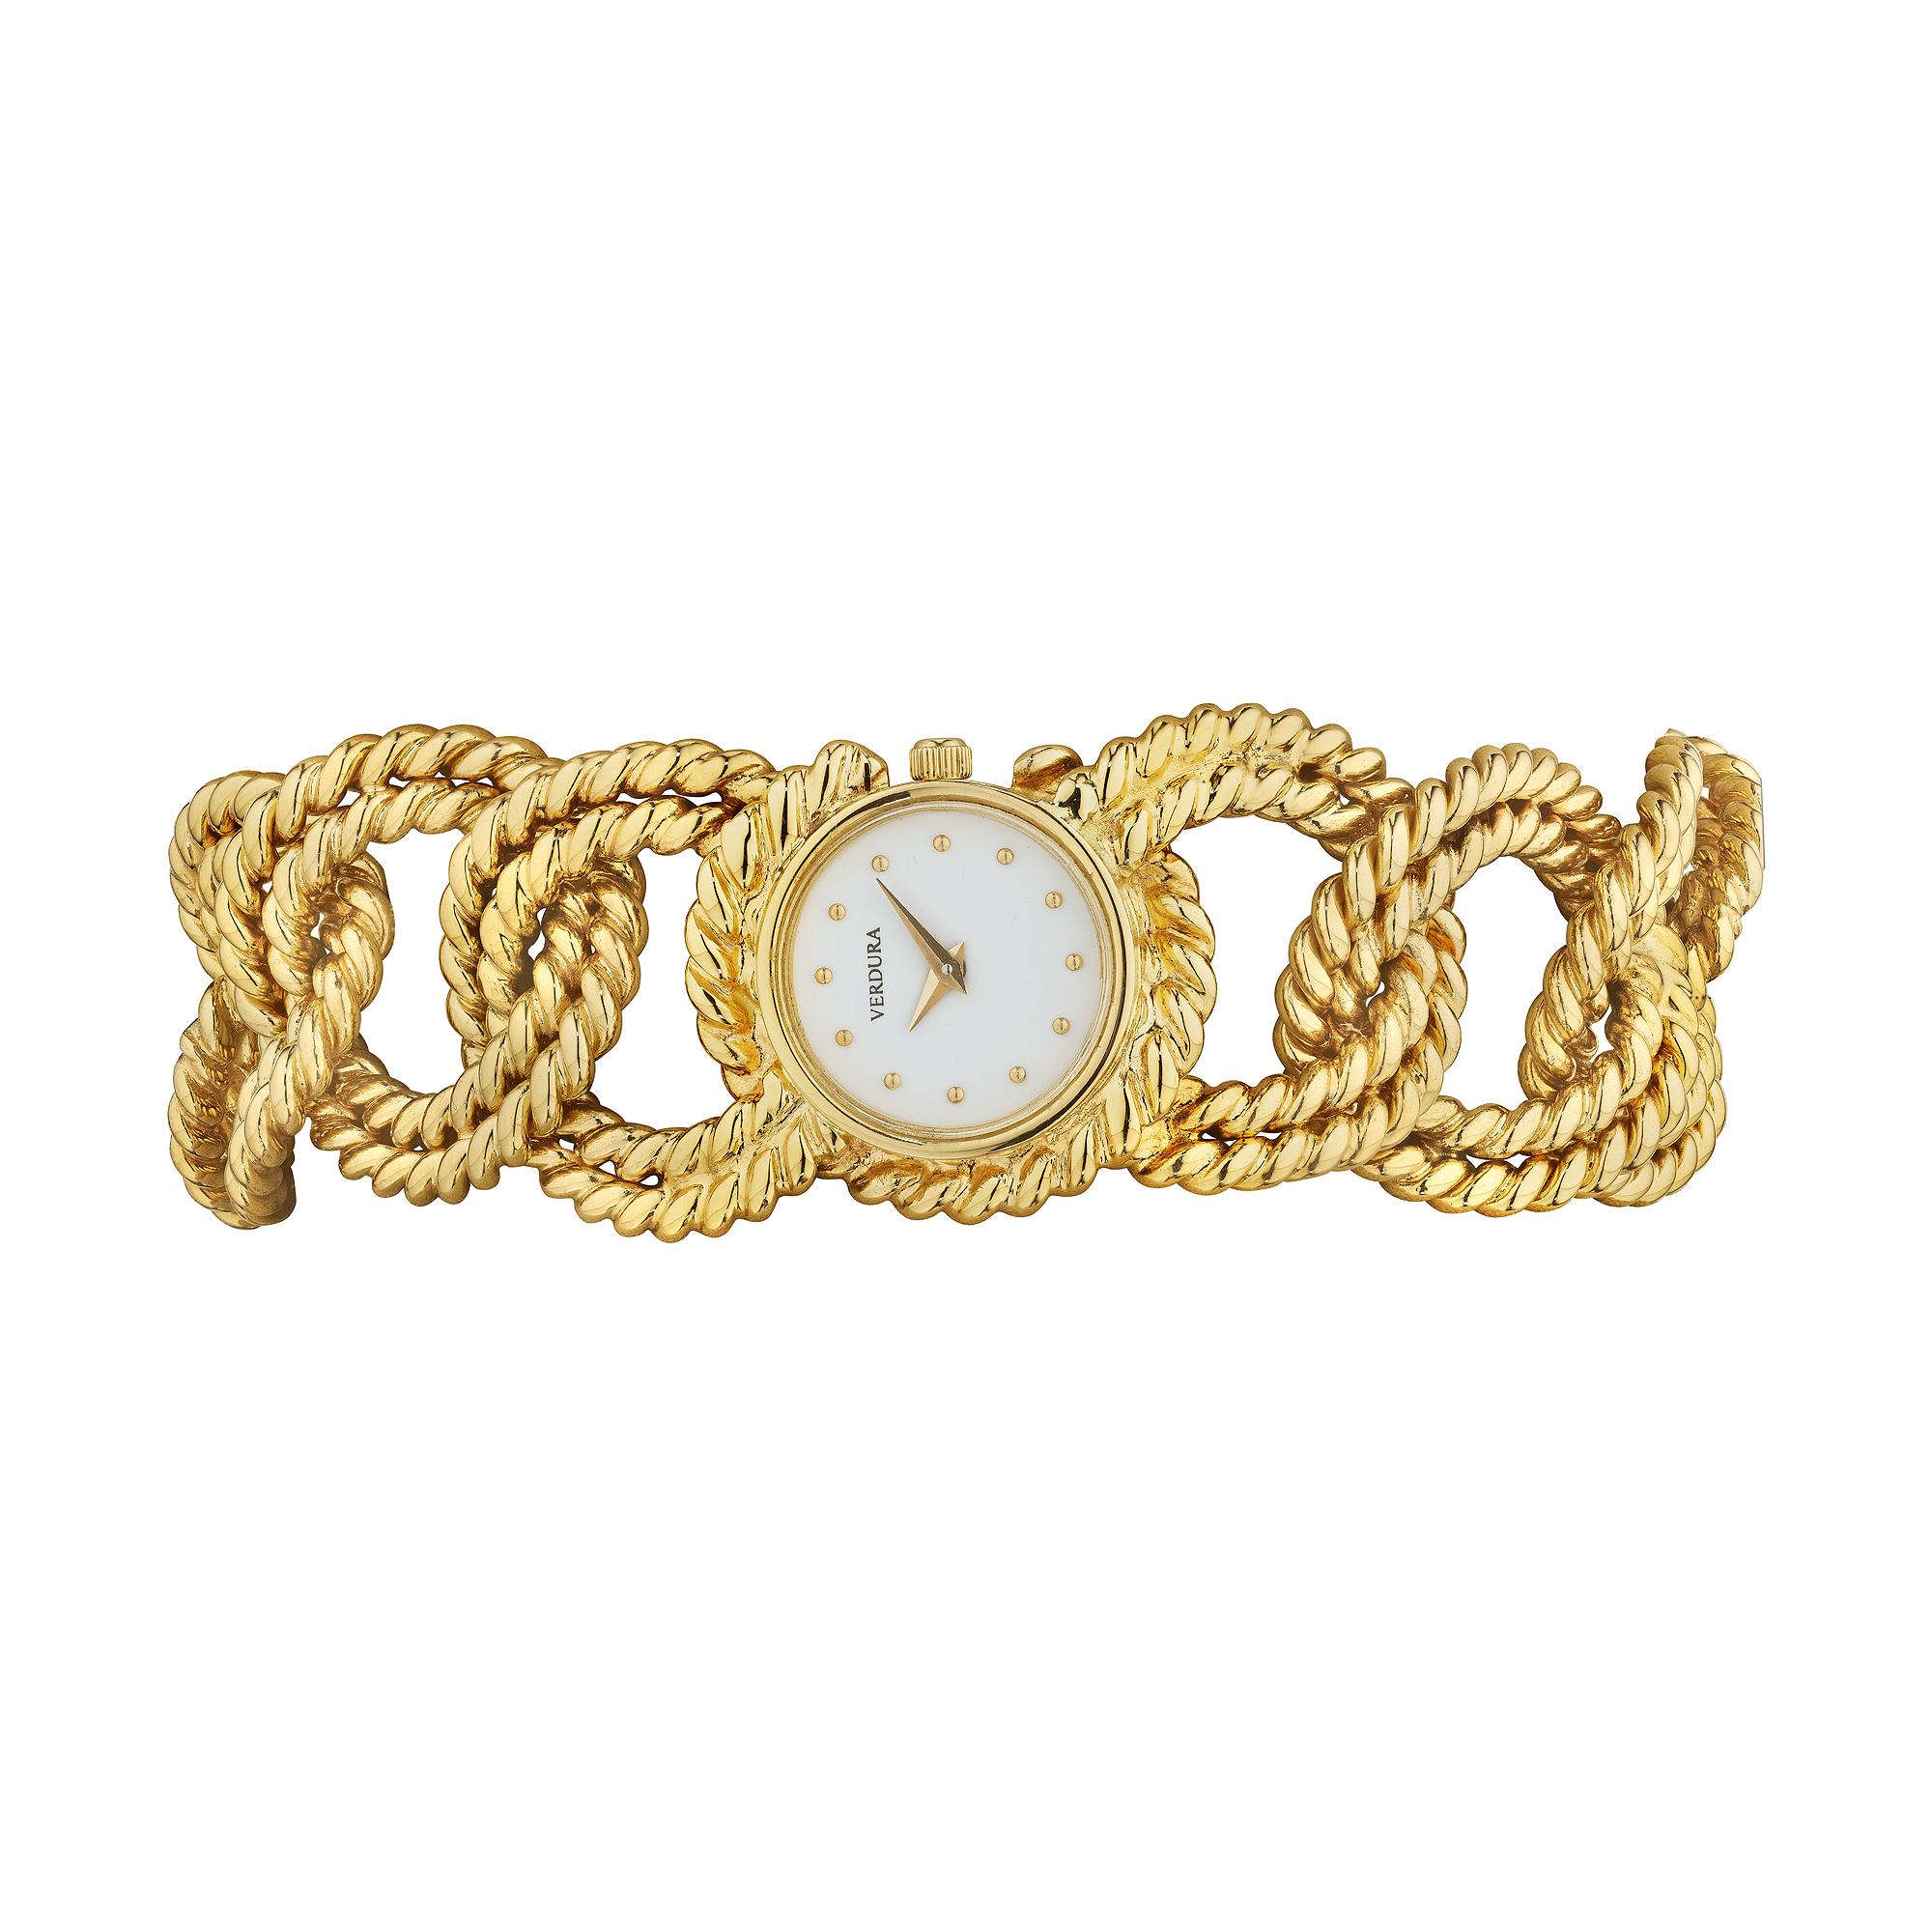 Attachez tout avec cet élégant bracelet de montre vintage Verdura en or jaune 18 carats à maillons en corde.  Circa 2007-10.  Signé Verdura sur le cadran de la montre.  7 1/2